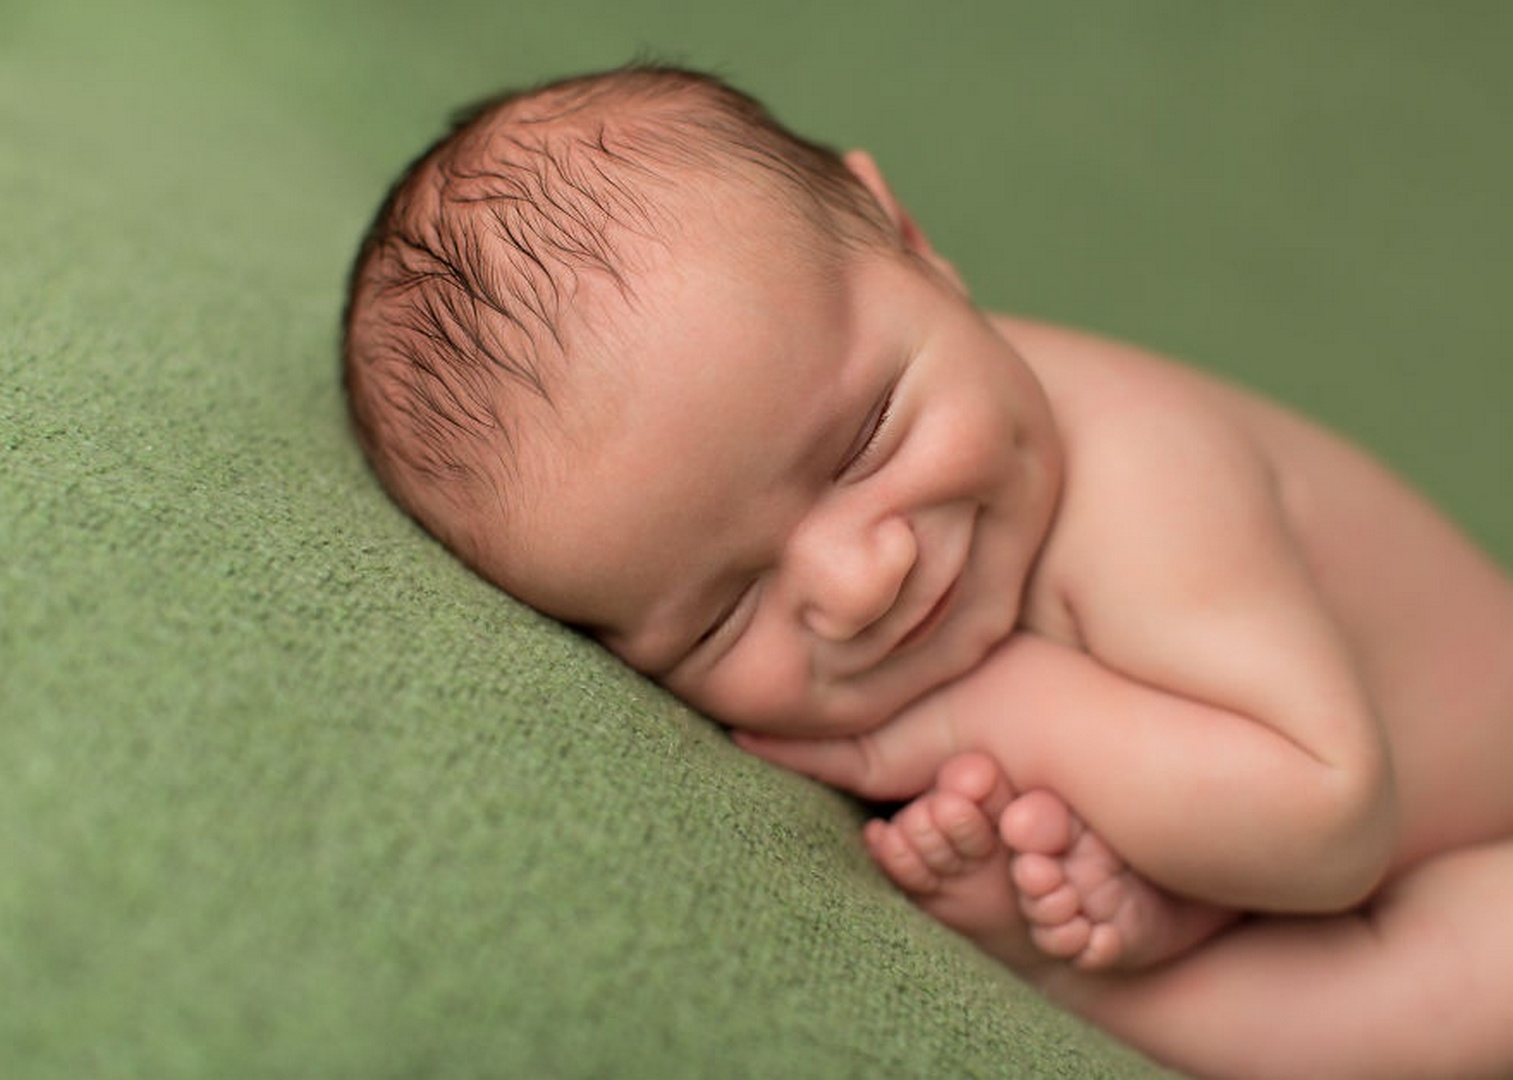 Первая улыбка ребенка. Новорожденный ребенок. Неворожденный ребёнок. Зебренок новорожденный. Новорожденный малыш.